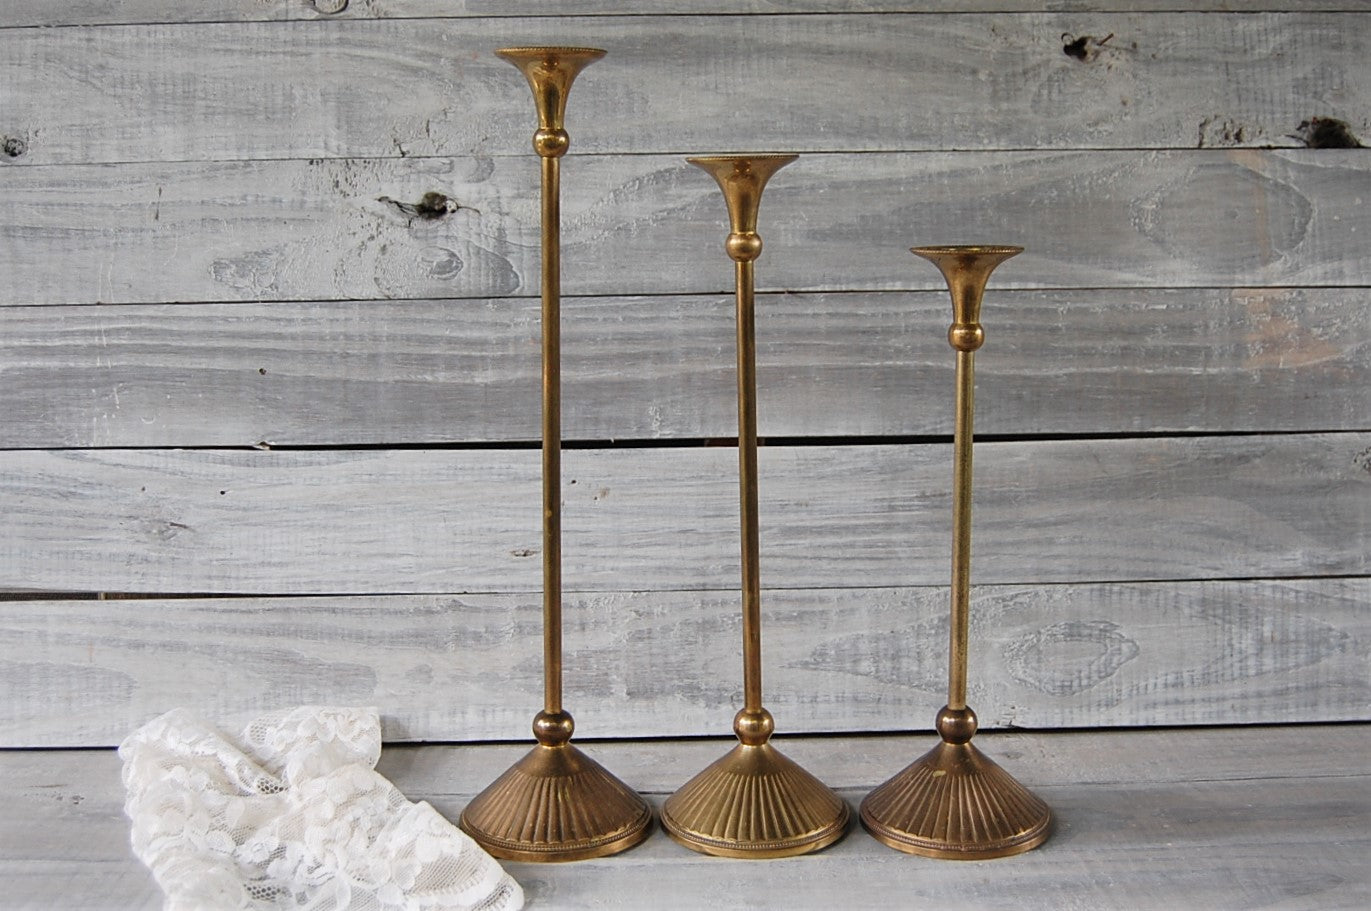 Tall brass candlesticks